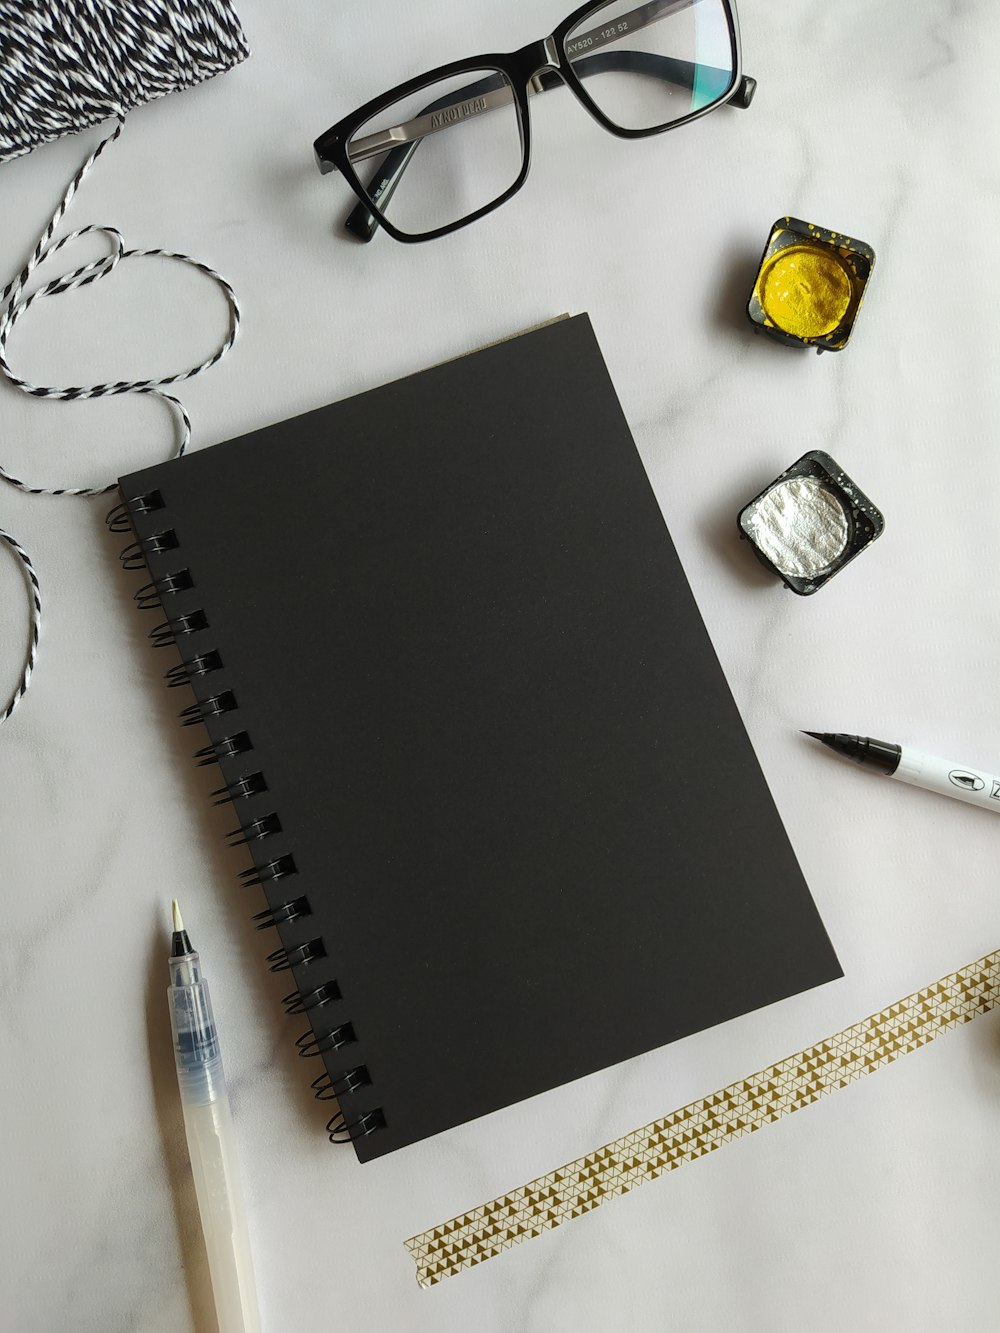 cuaderno negro junto a bolígrafo negro y gafas con montura negra